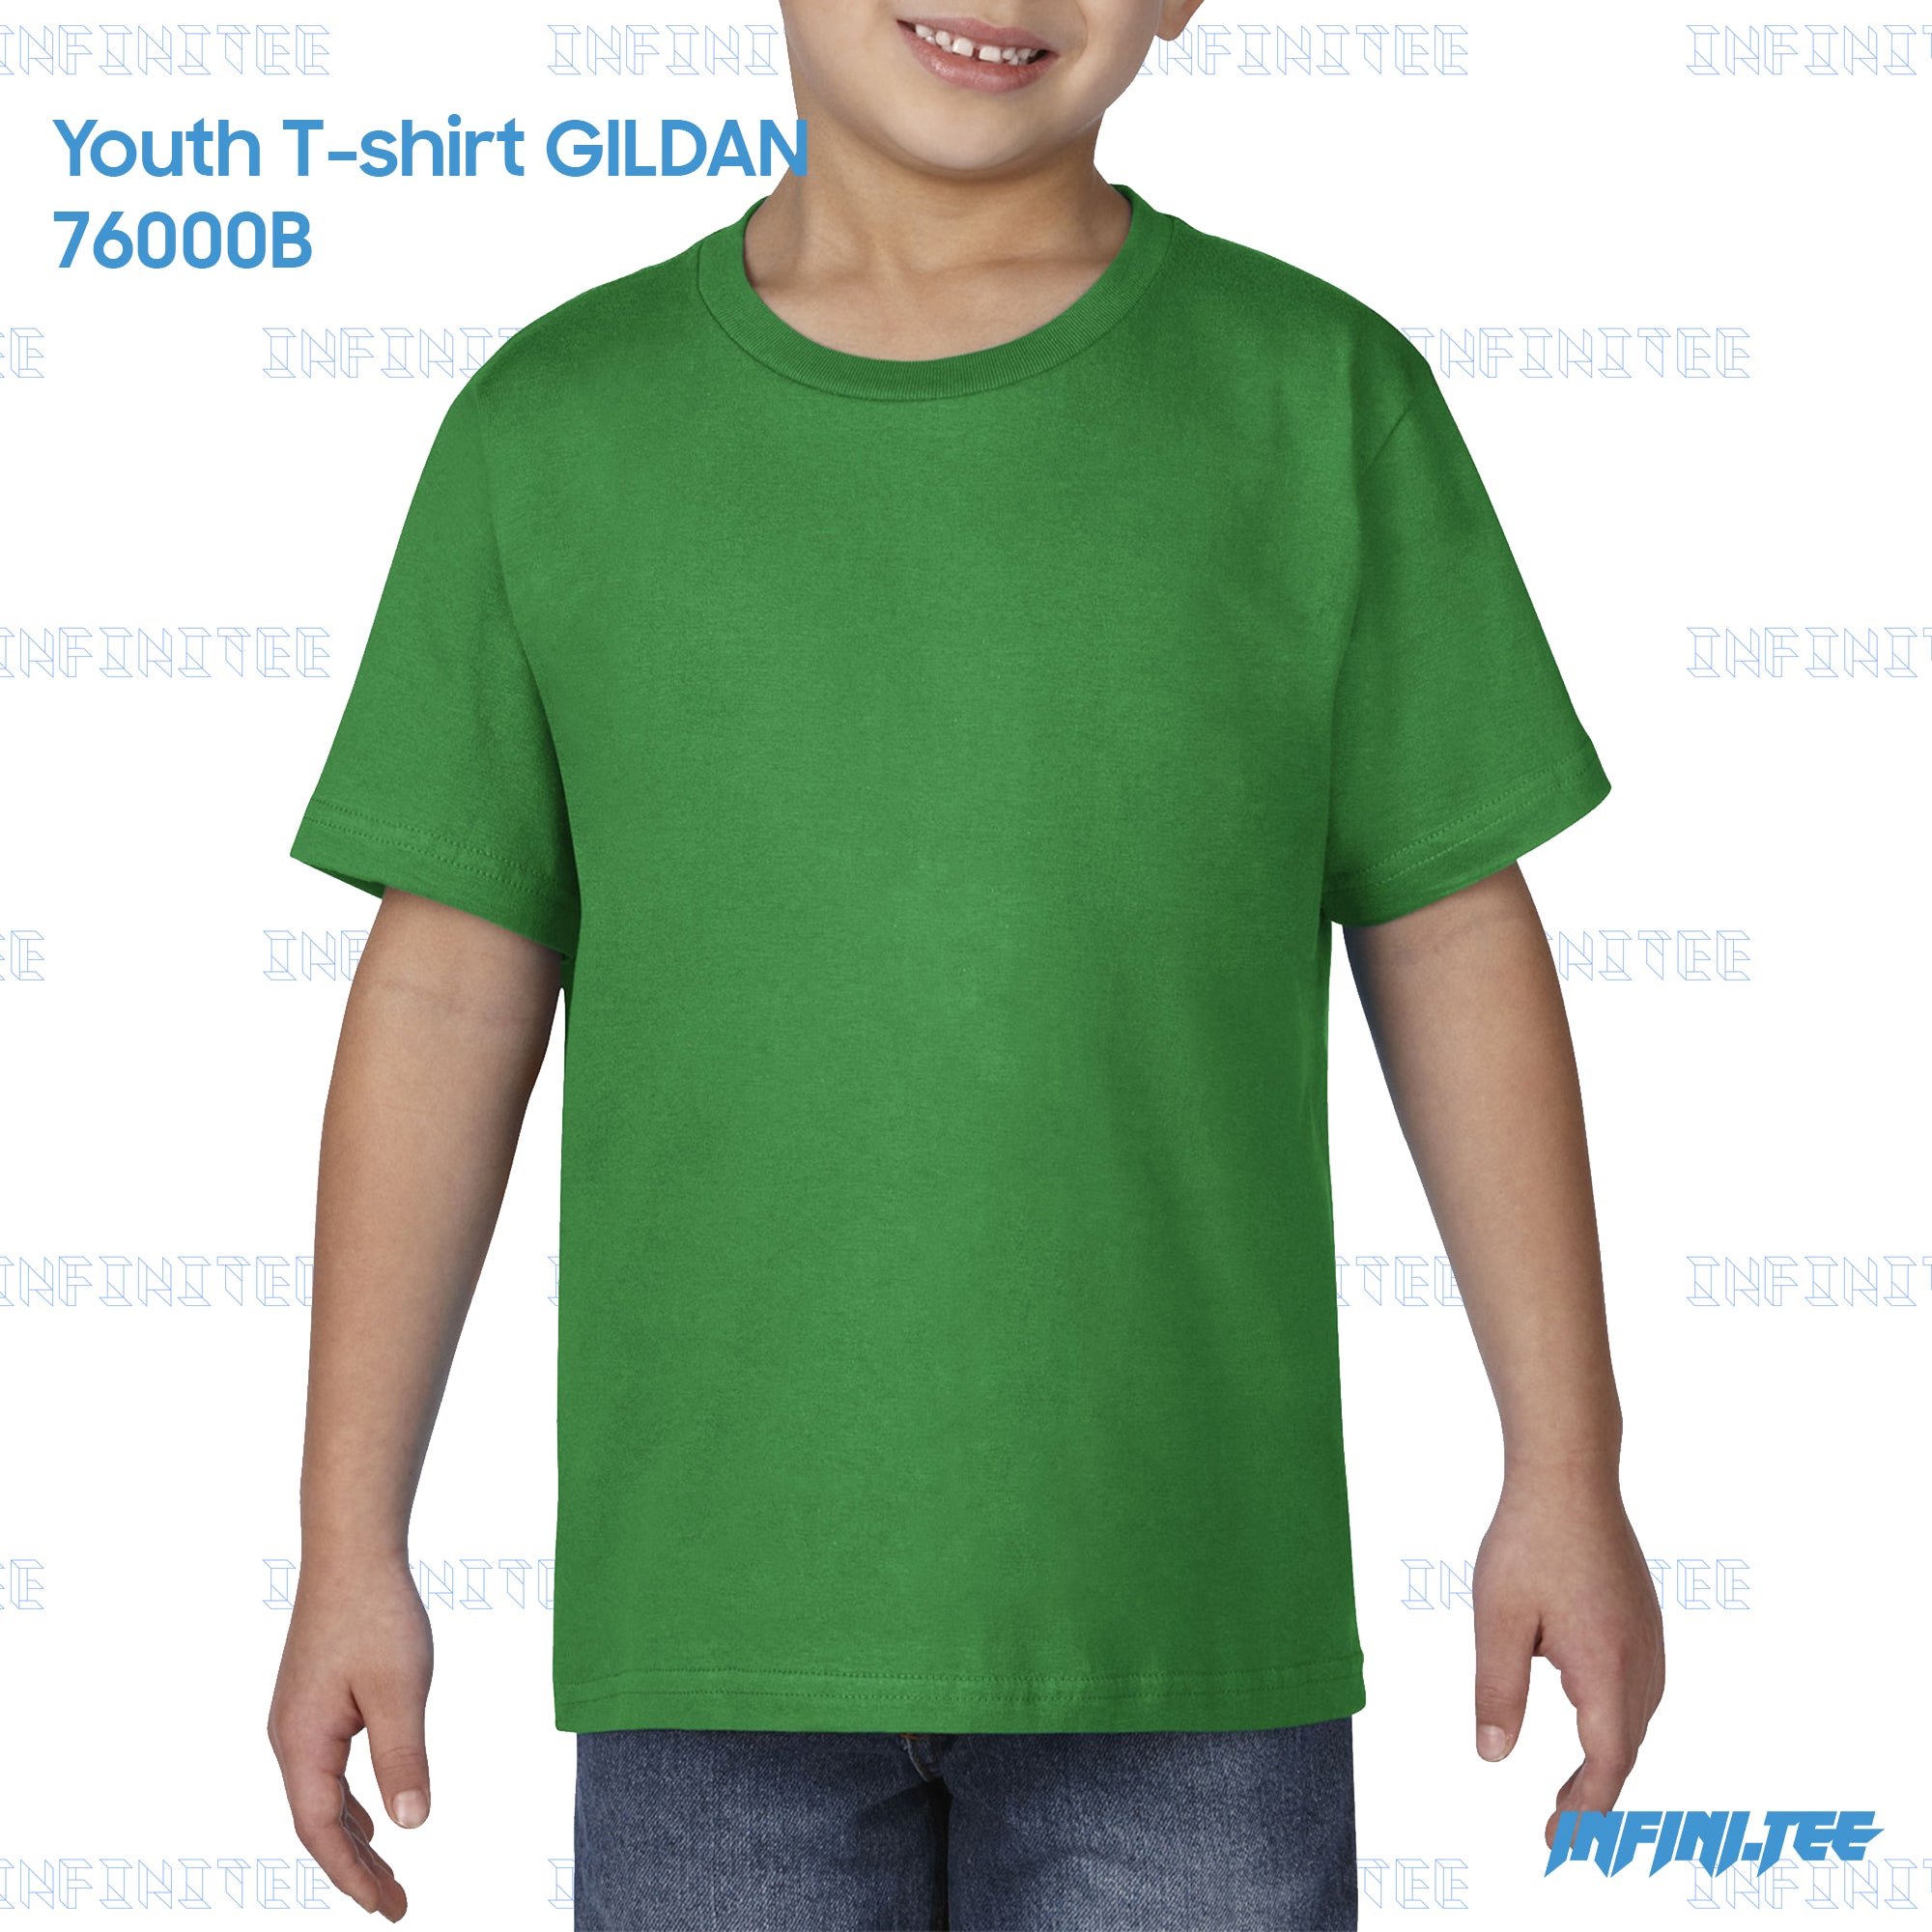 Youth T-shirt 76000B GILDAN - IRISH GREEN